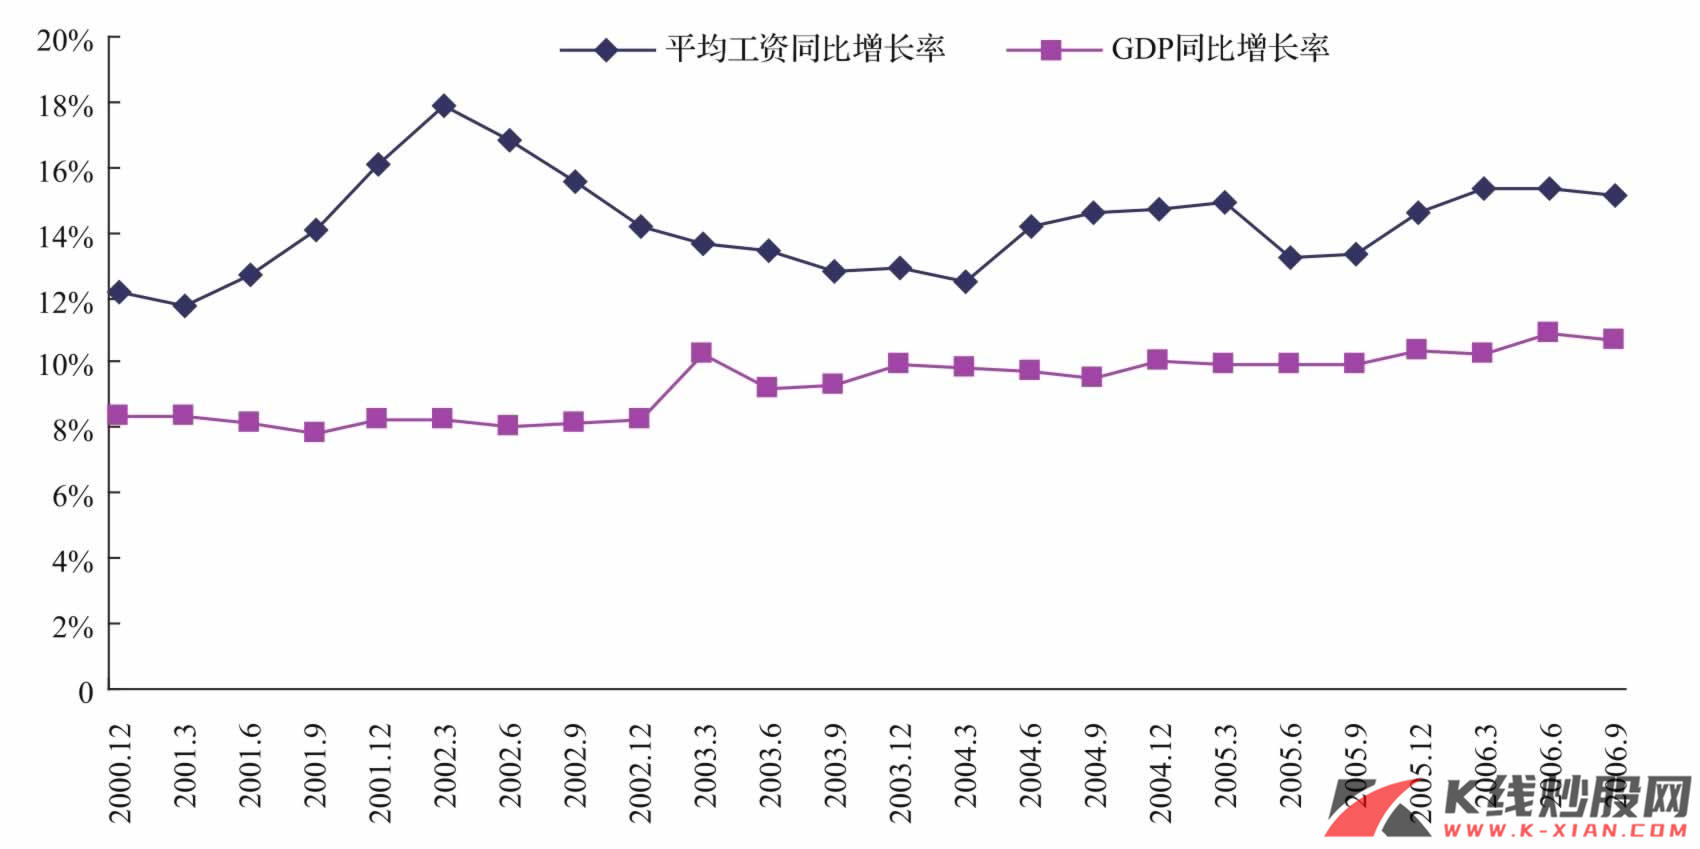 中国的平均工资同比增长率和GDP同比增长率